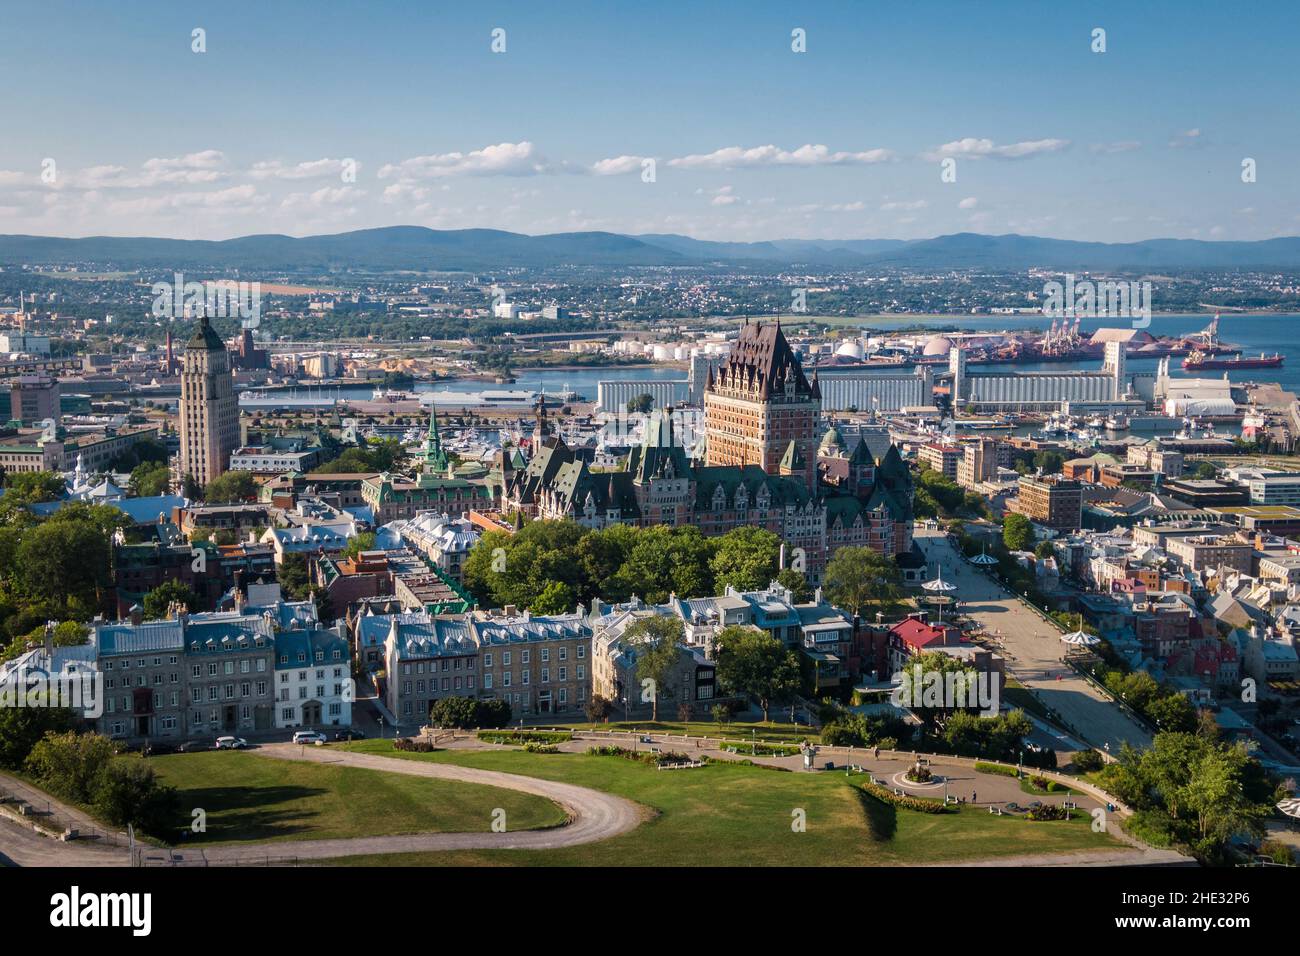 Vue aérienne de la ville de Québec, y compris le monument historique Château Frontenac pendant l'été à Québec, Canada. Banque D'Images